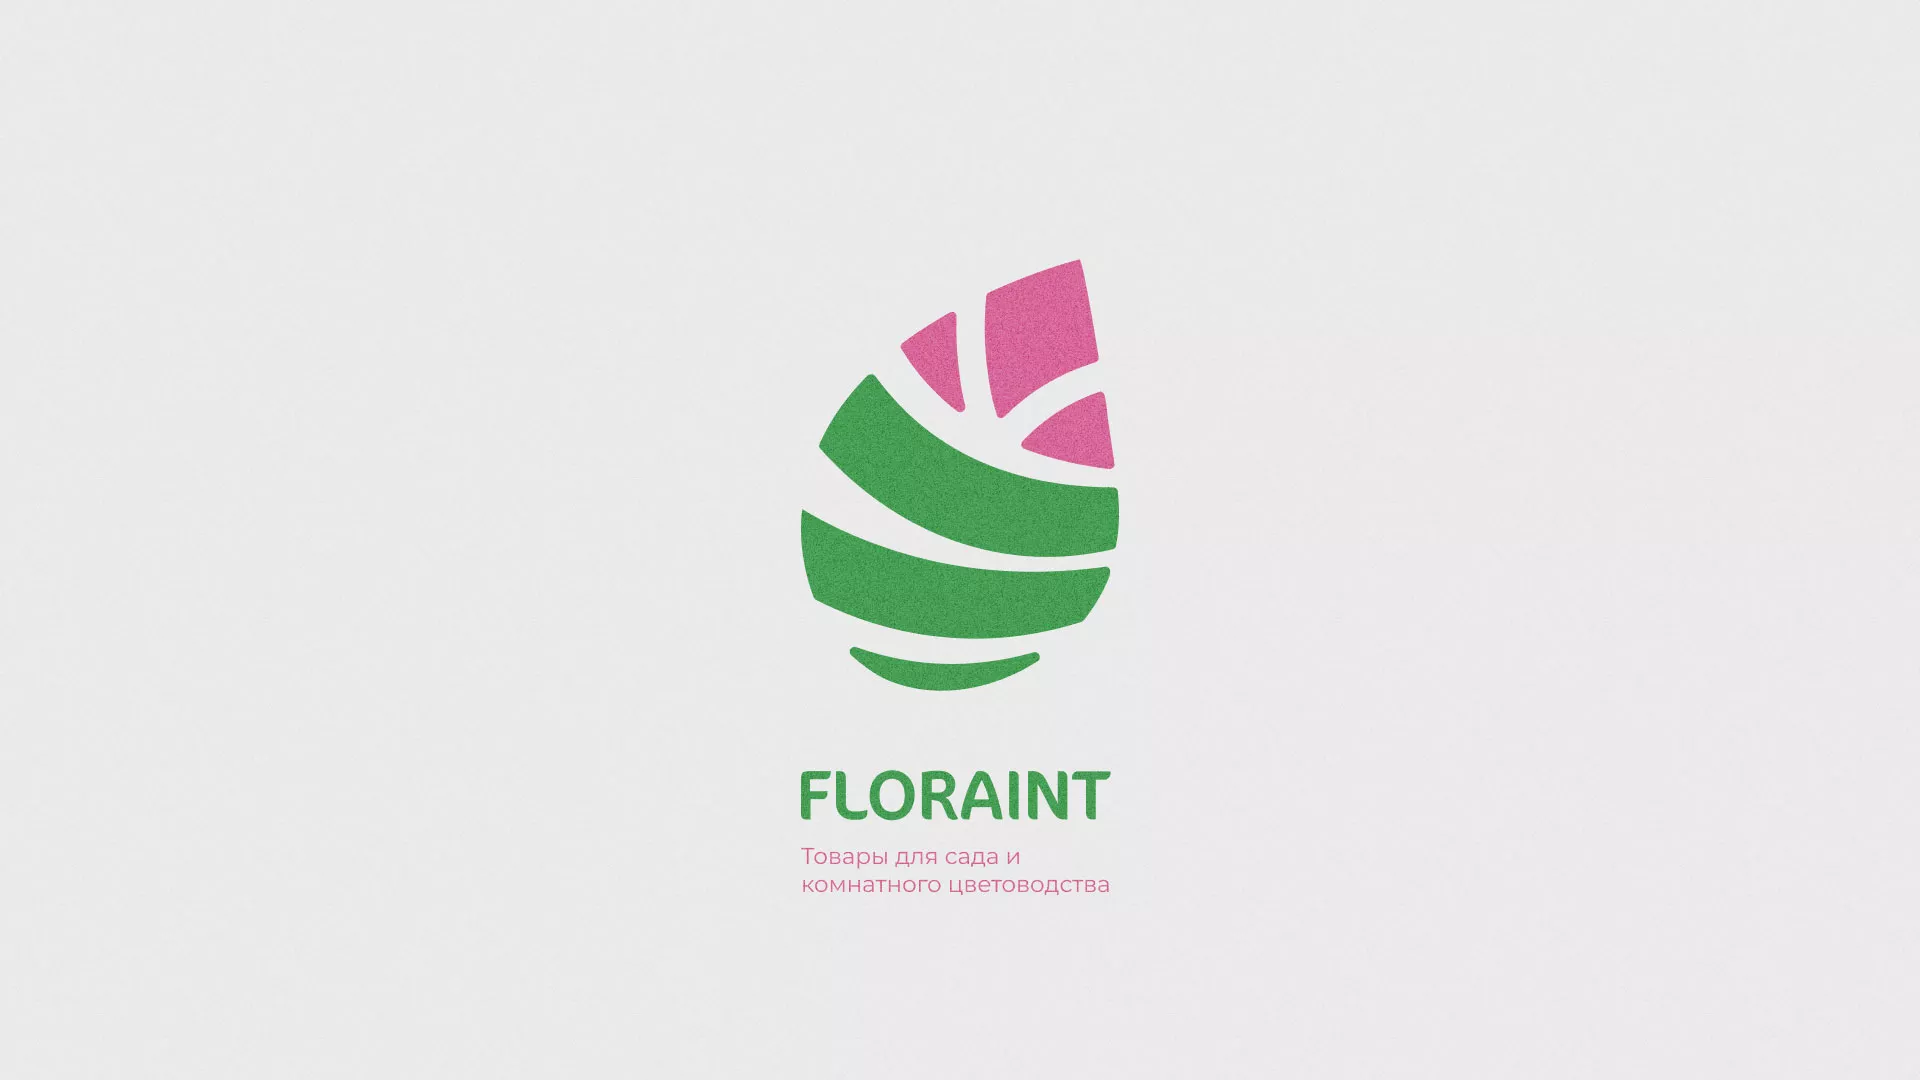 Разработка оформления профиля Instagram для магазина «Floraint» в Усть-Лабинске